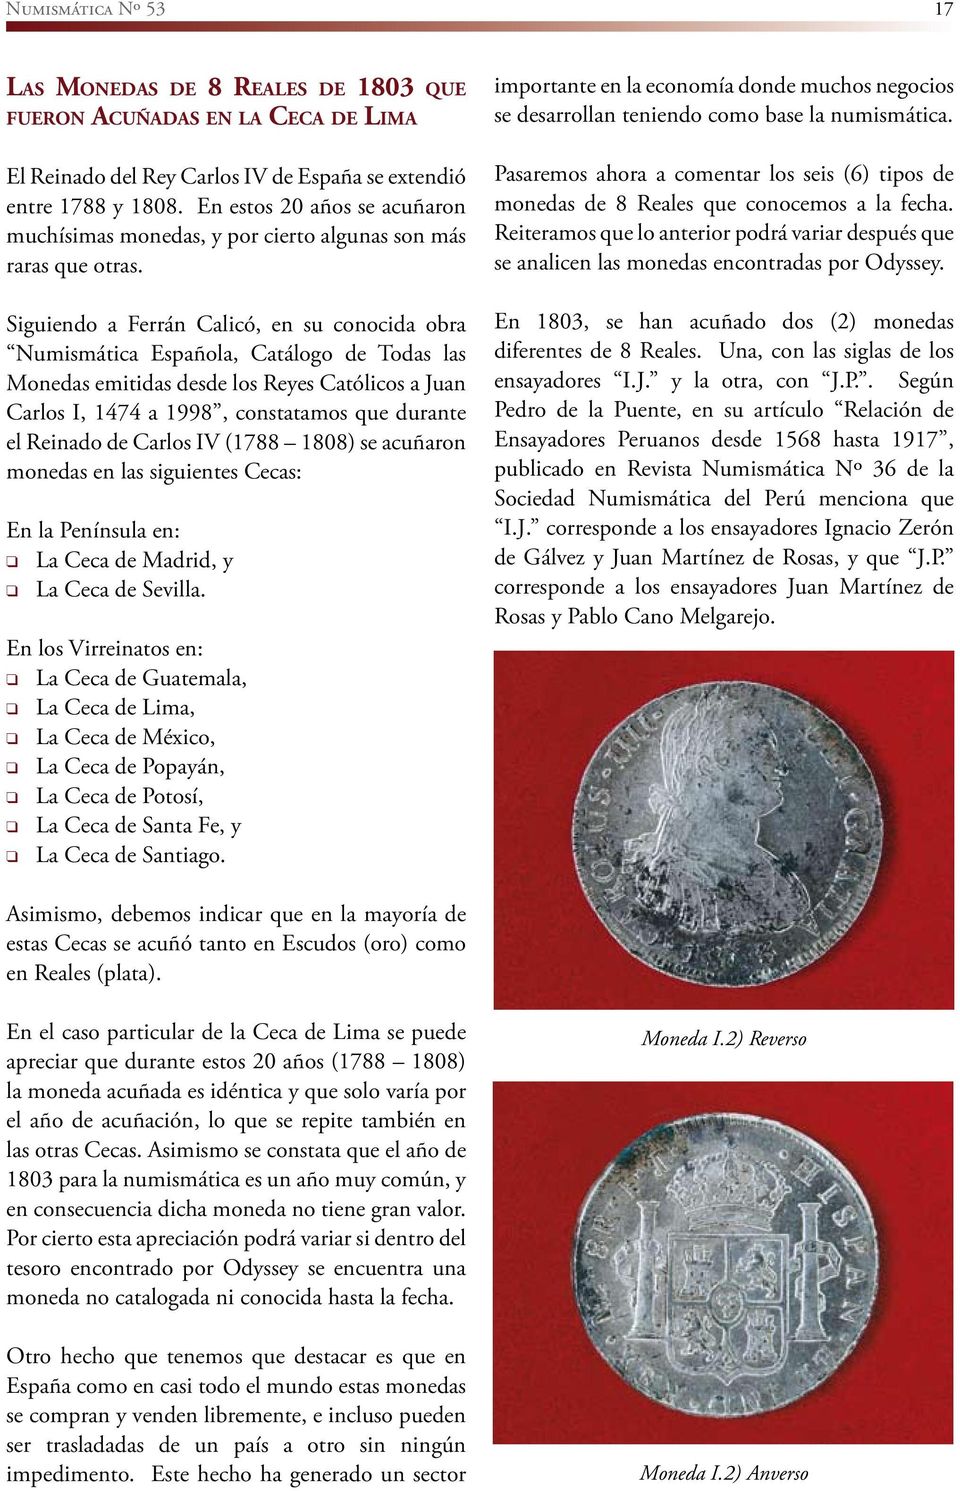 Siguiendo a Ferrán Calicó, en su conocida obra Numismática Española, Catálogo de Todas las Monedas emitidas desde los Reyes Católicos a Juan Carlos I, 1474 a 1998, constatamos que durante el Reinado